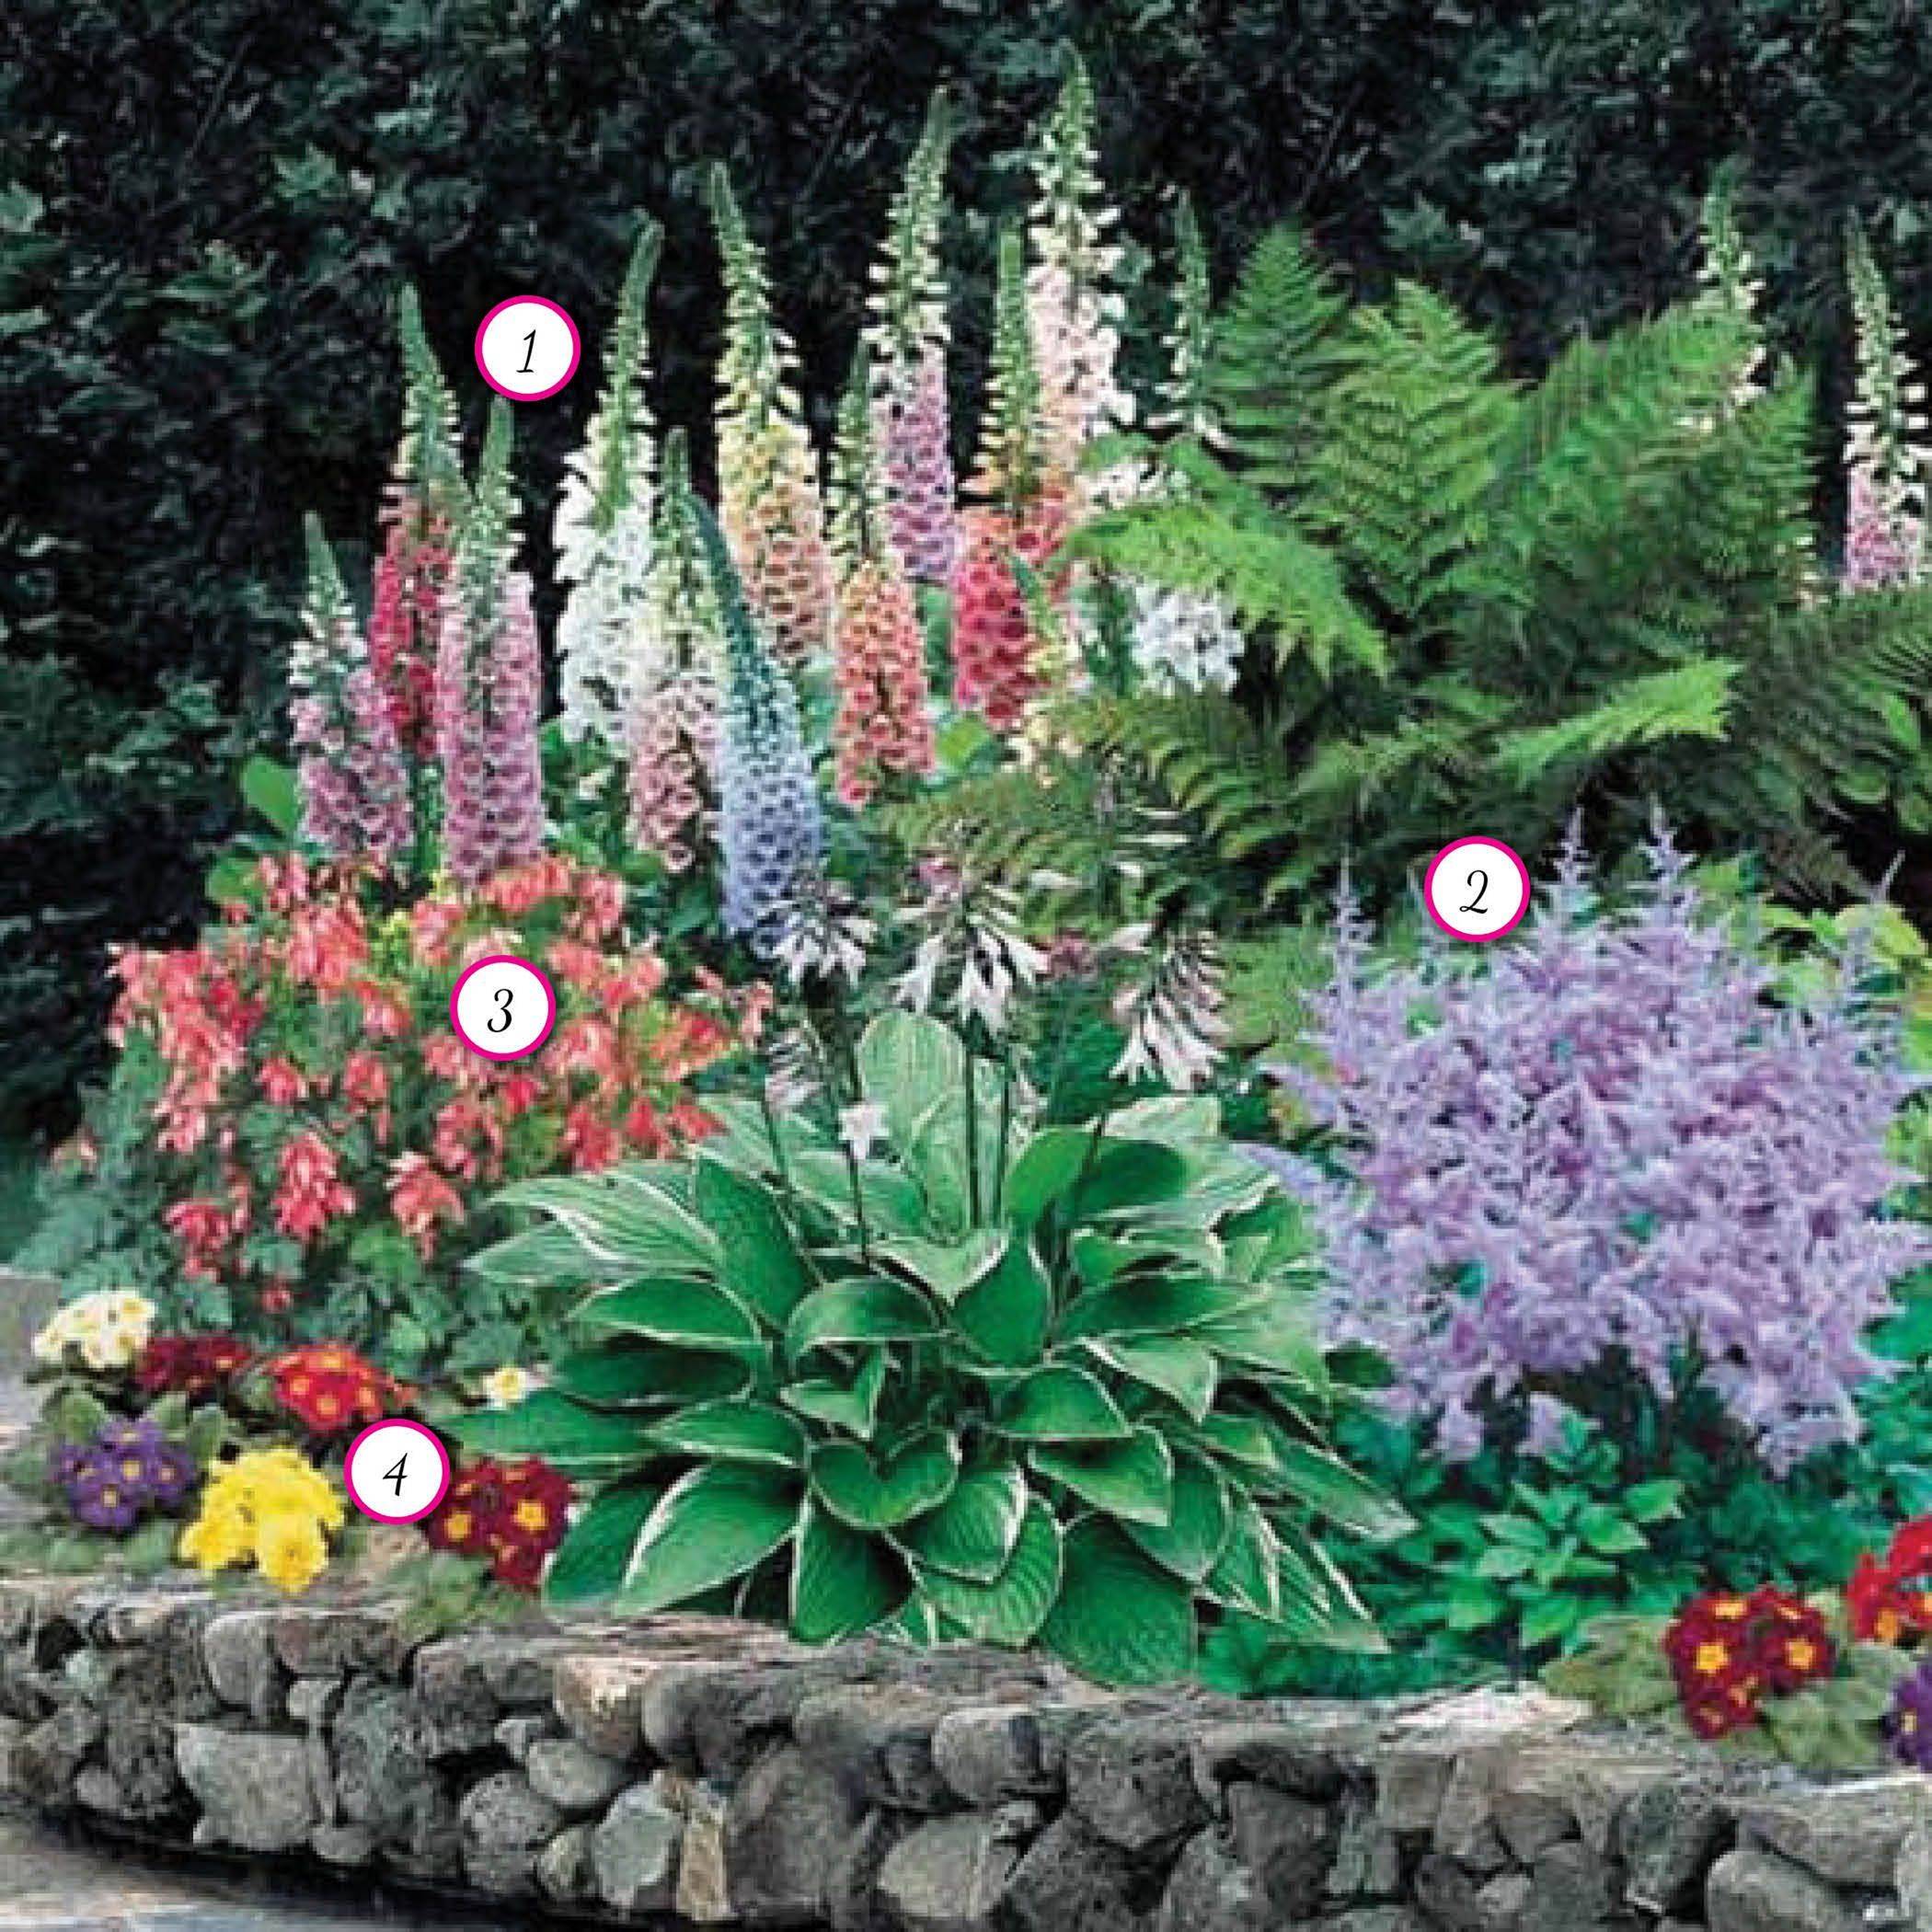 Decoomo Trends Home Decoration Ideas Shade Garden Design Garden